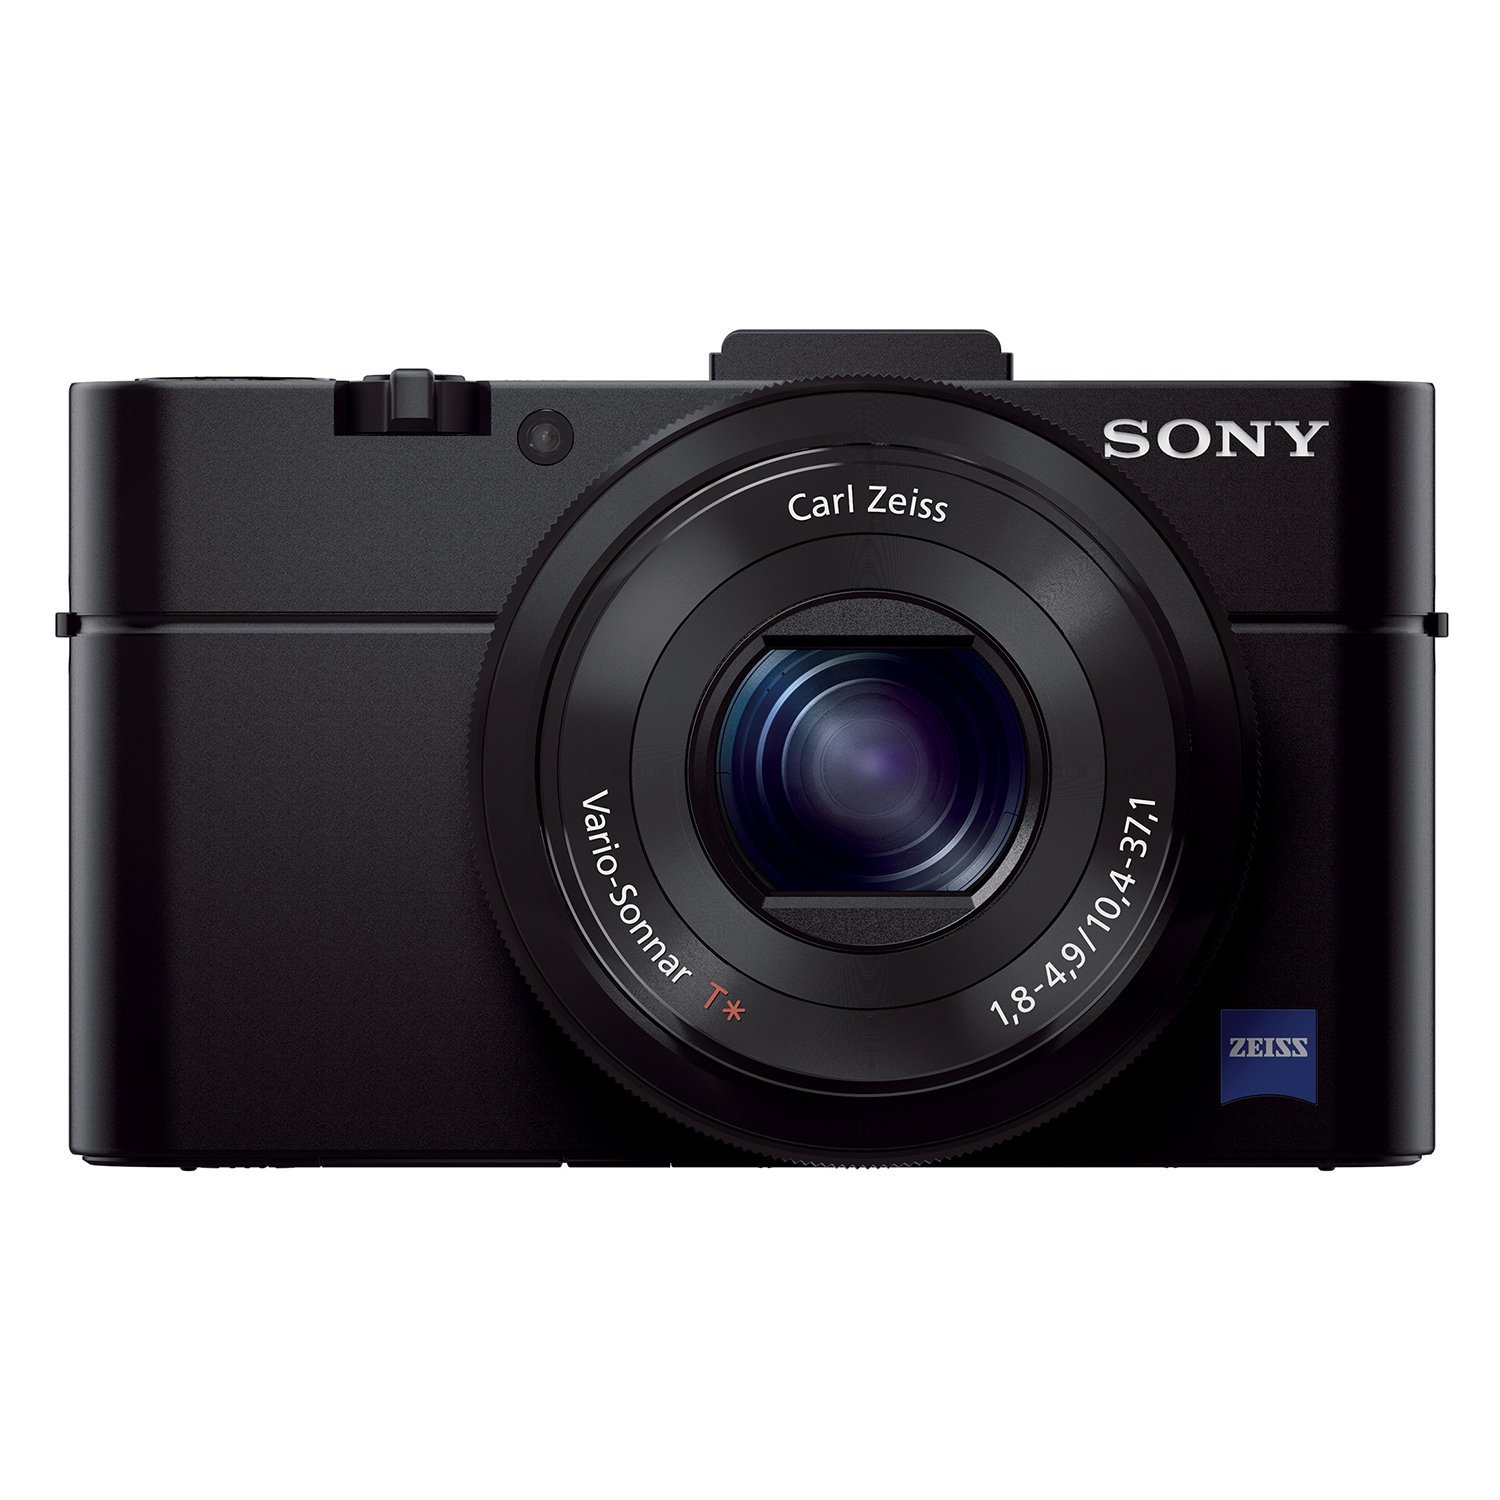 Sony DSCRX100M2 / B 20.2 MP साइबर-शॉट डिजिटल स्टिल कैमरा (ब्लैक)